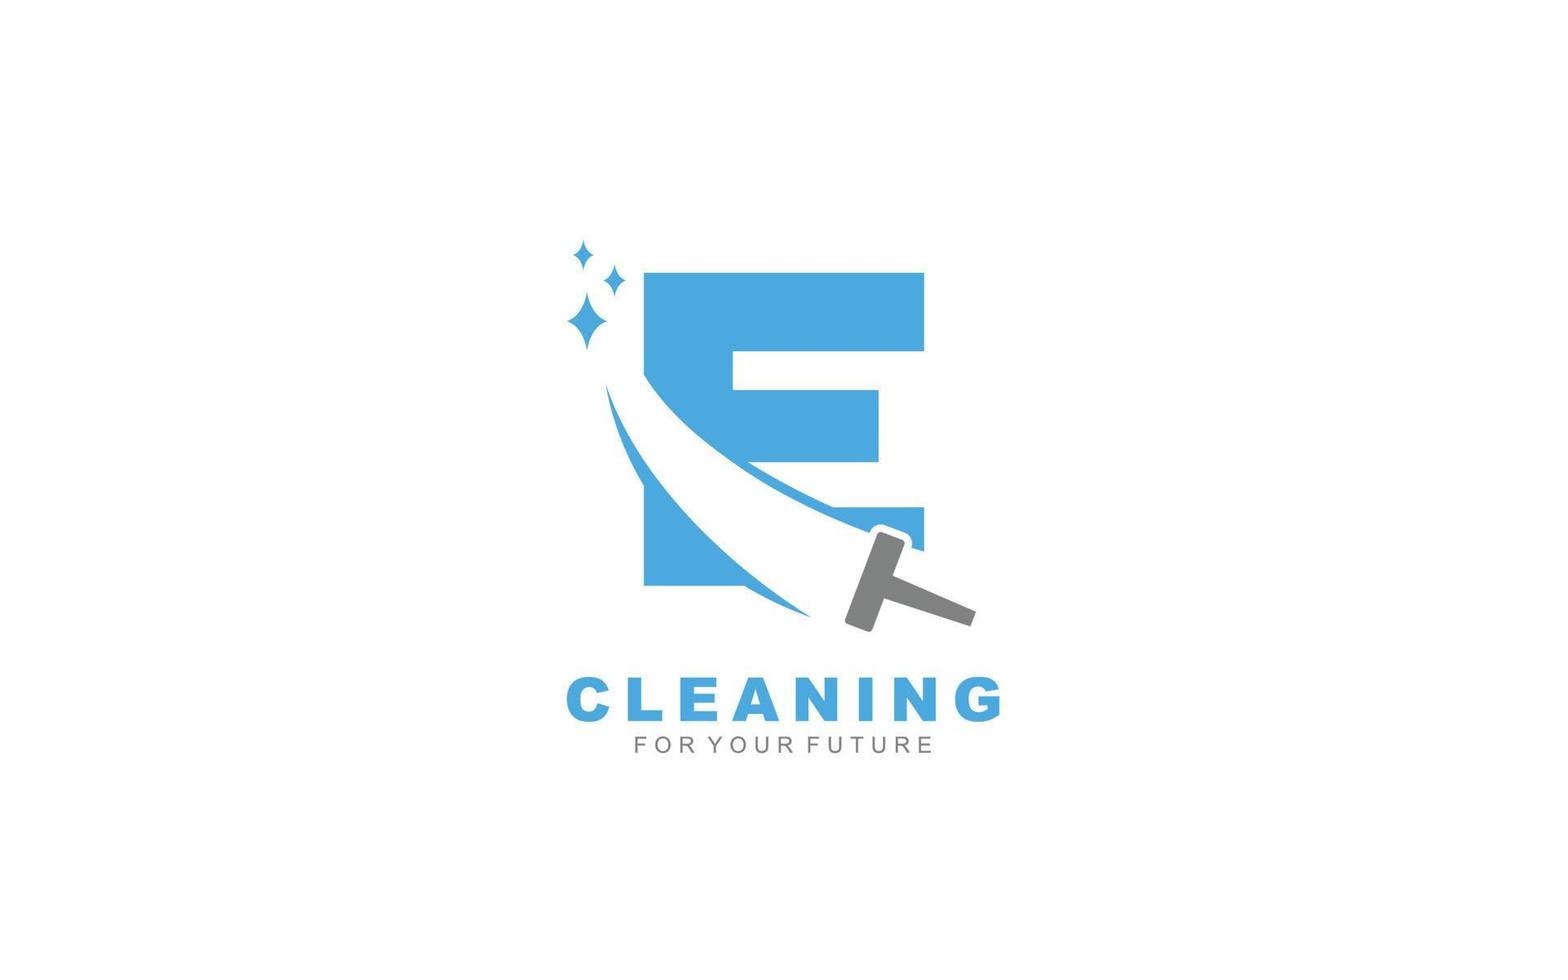 Servicios de limpieza de logotipos electrónicos para empresas de branding. ilustración de vector de plantilla de tareas domésticas para su marca.